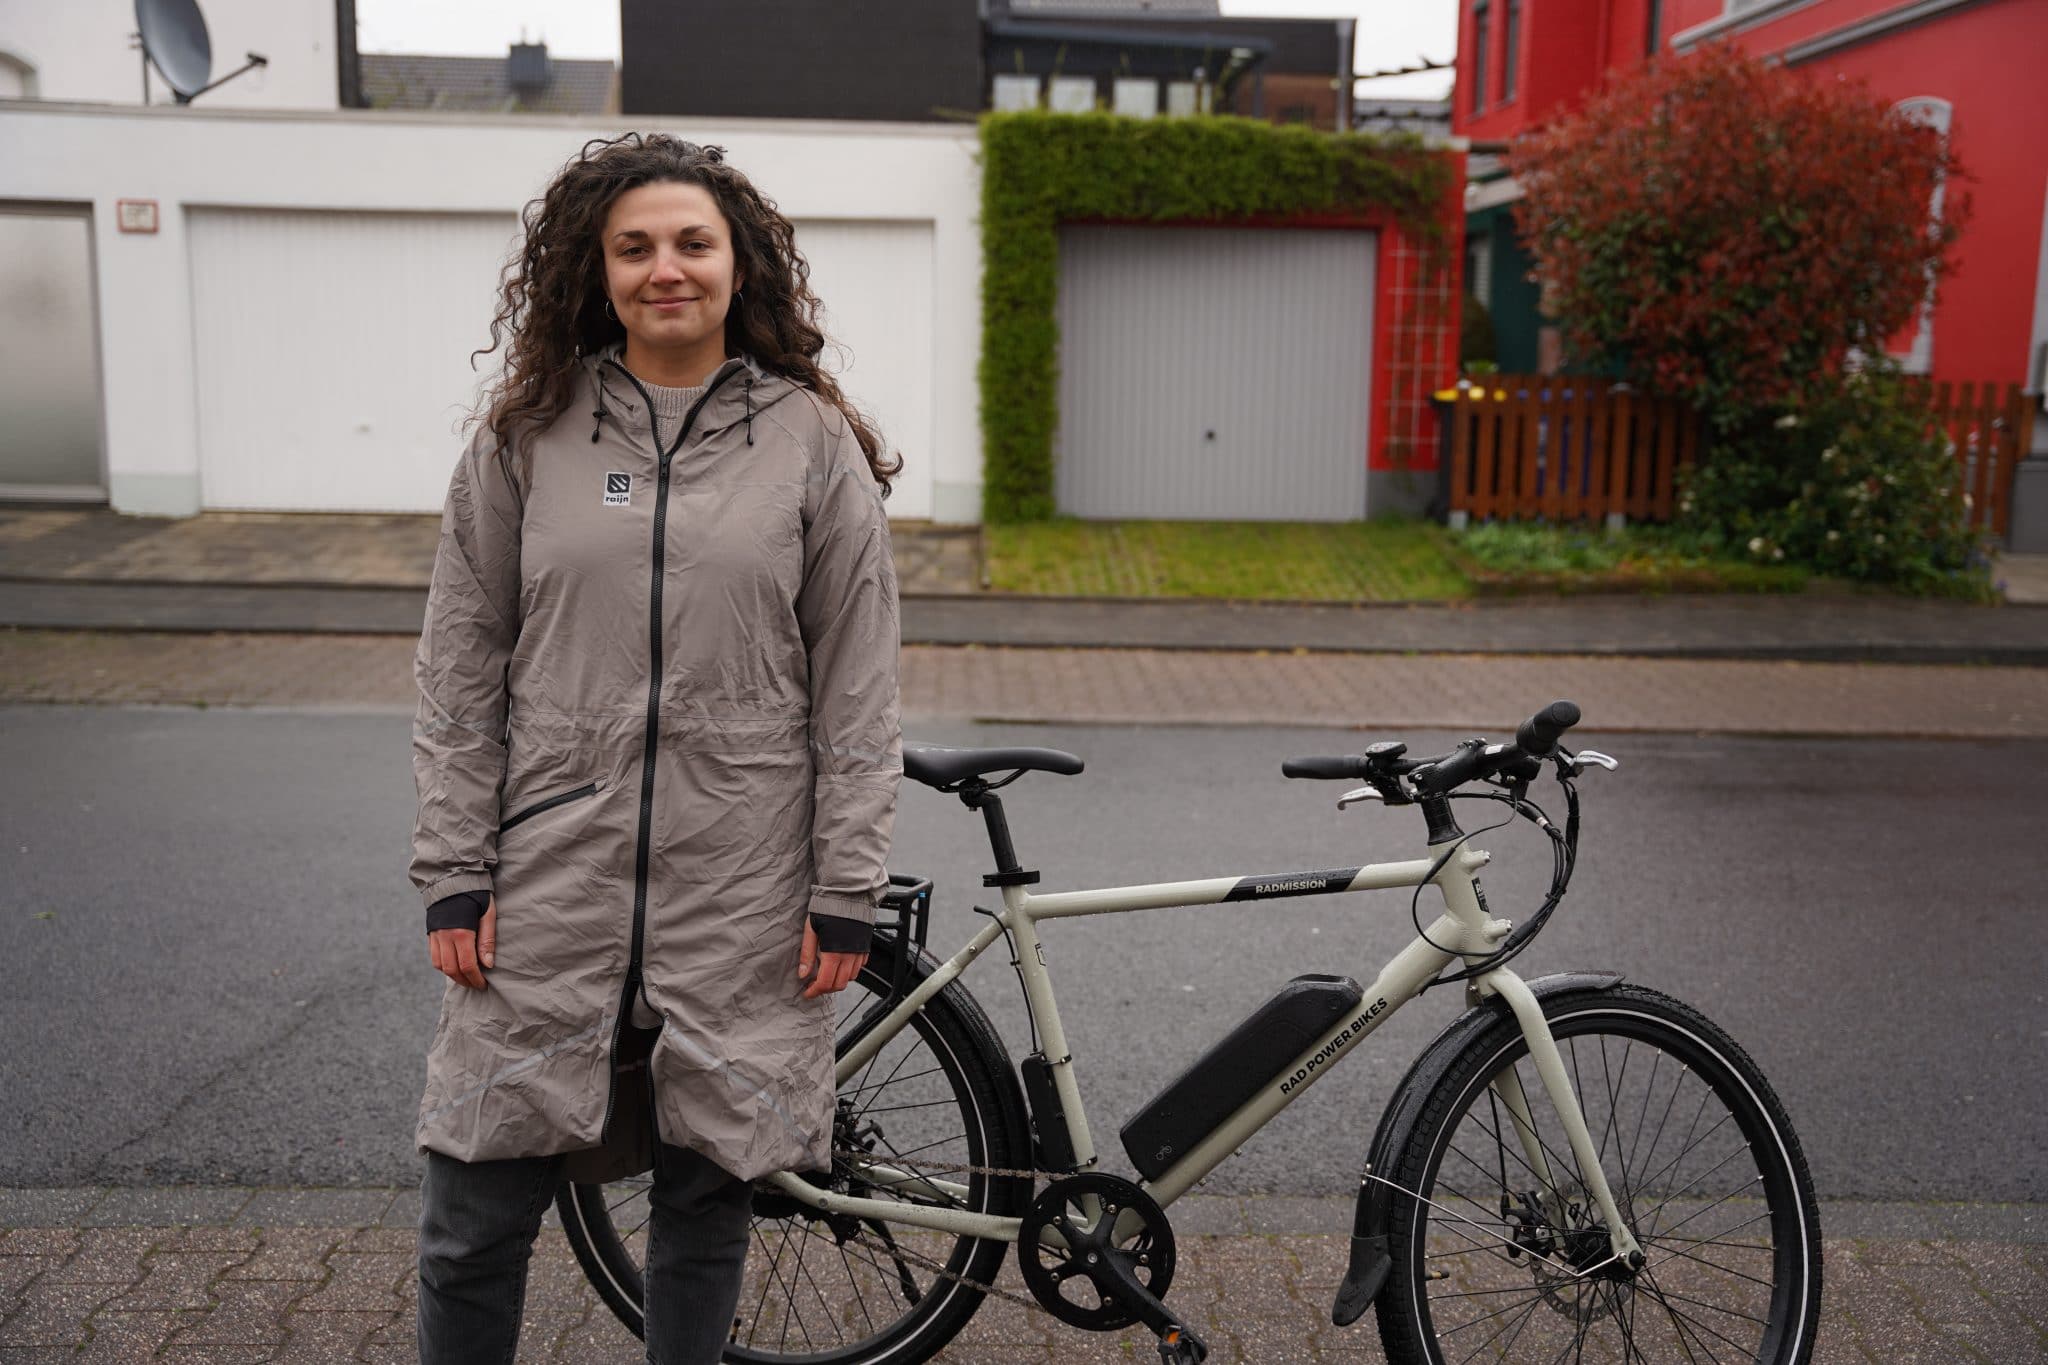 E-Bike | Fahrrad | Regenkleidung - A7300644 scaled - ebike-news.de